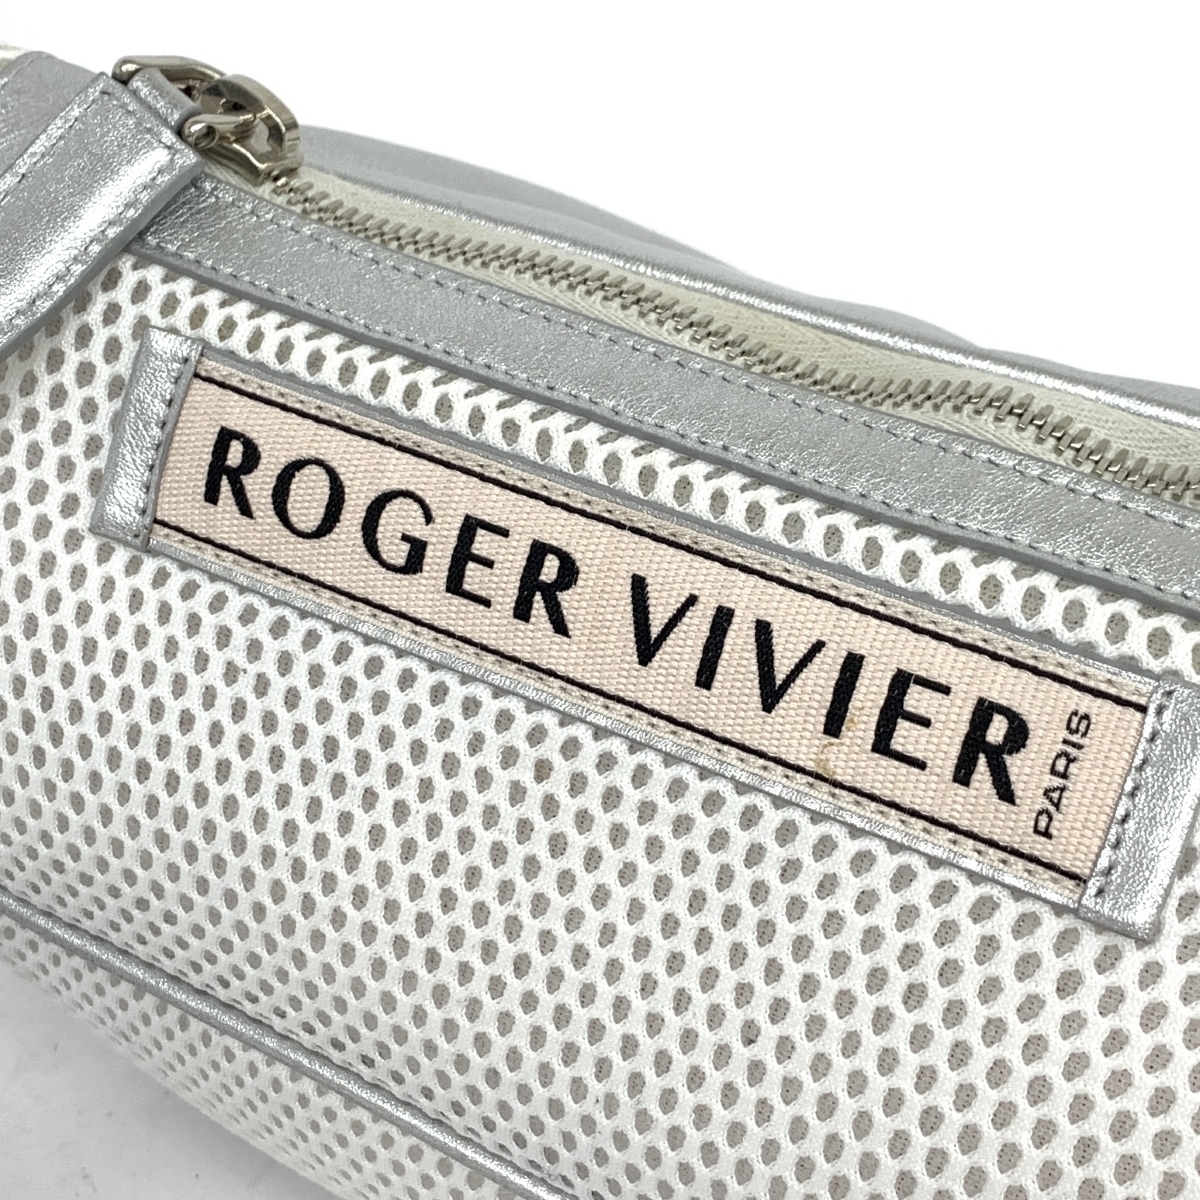 【楽天市場】Roger Vivier ロジェヴィヴィエ ボディバッグ シルバー 